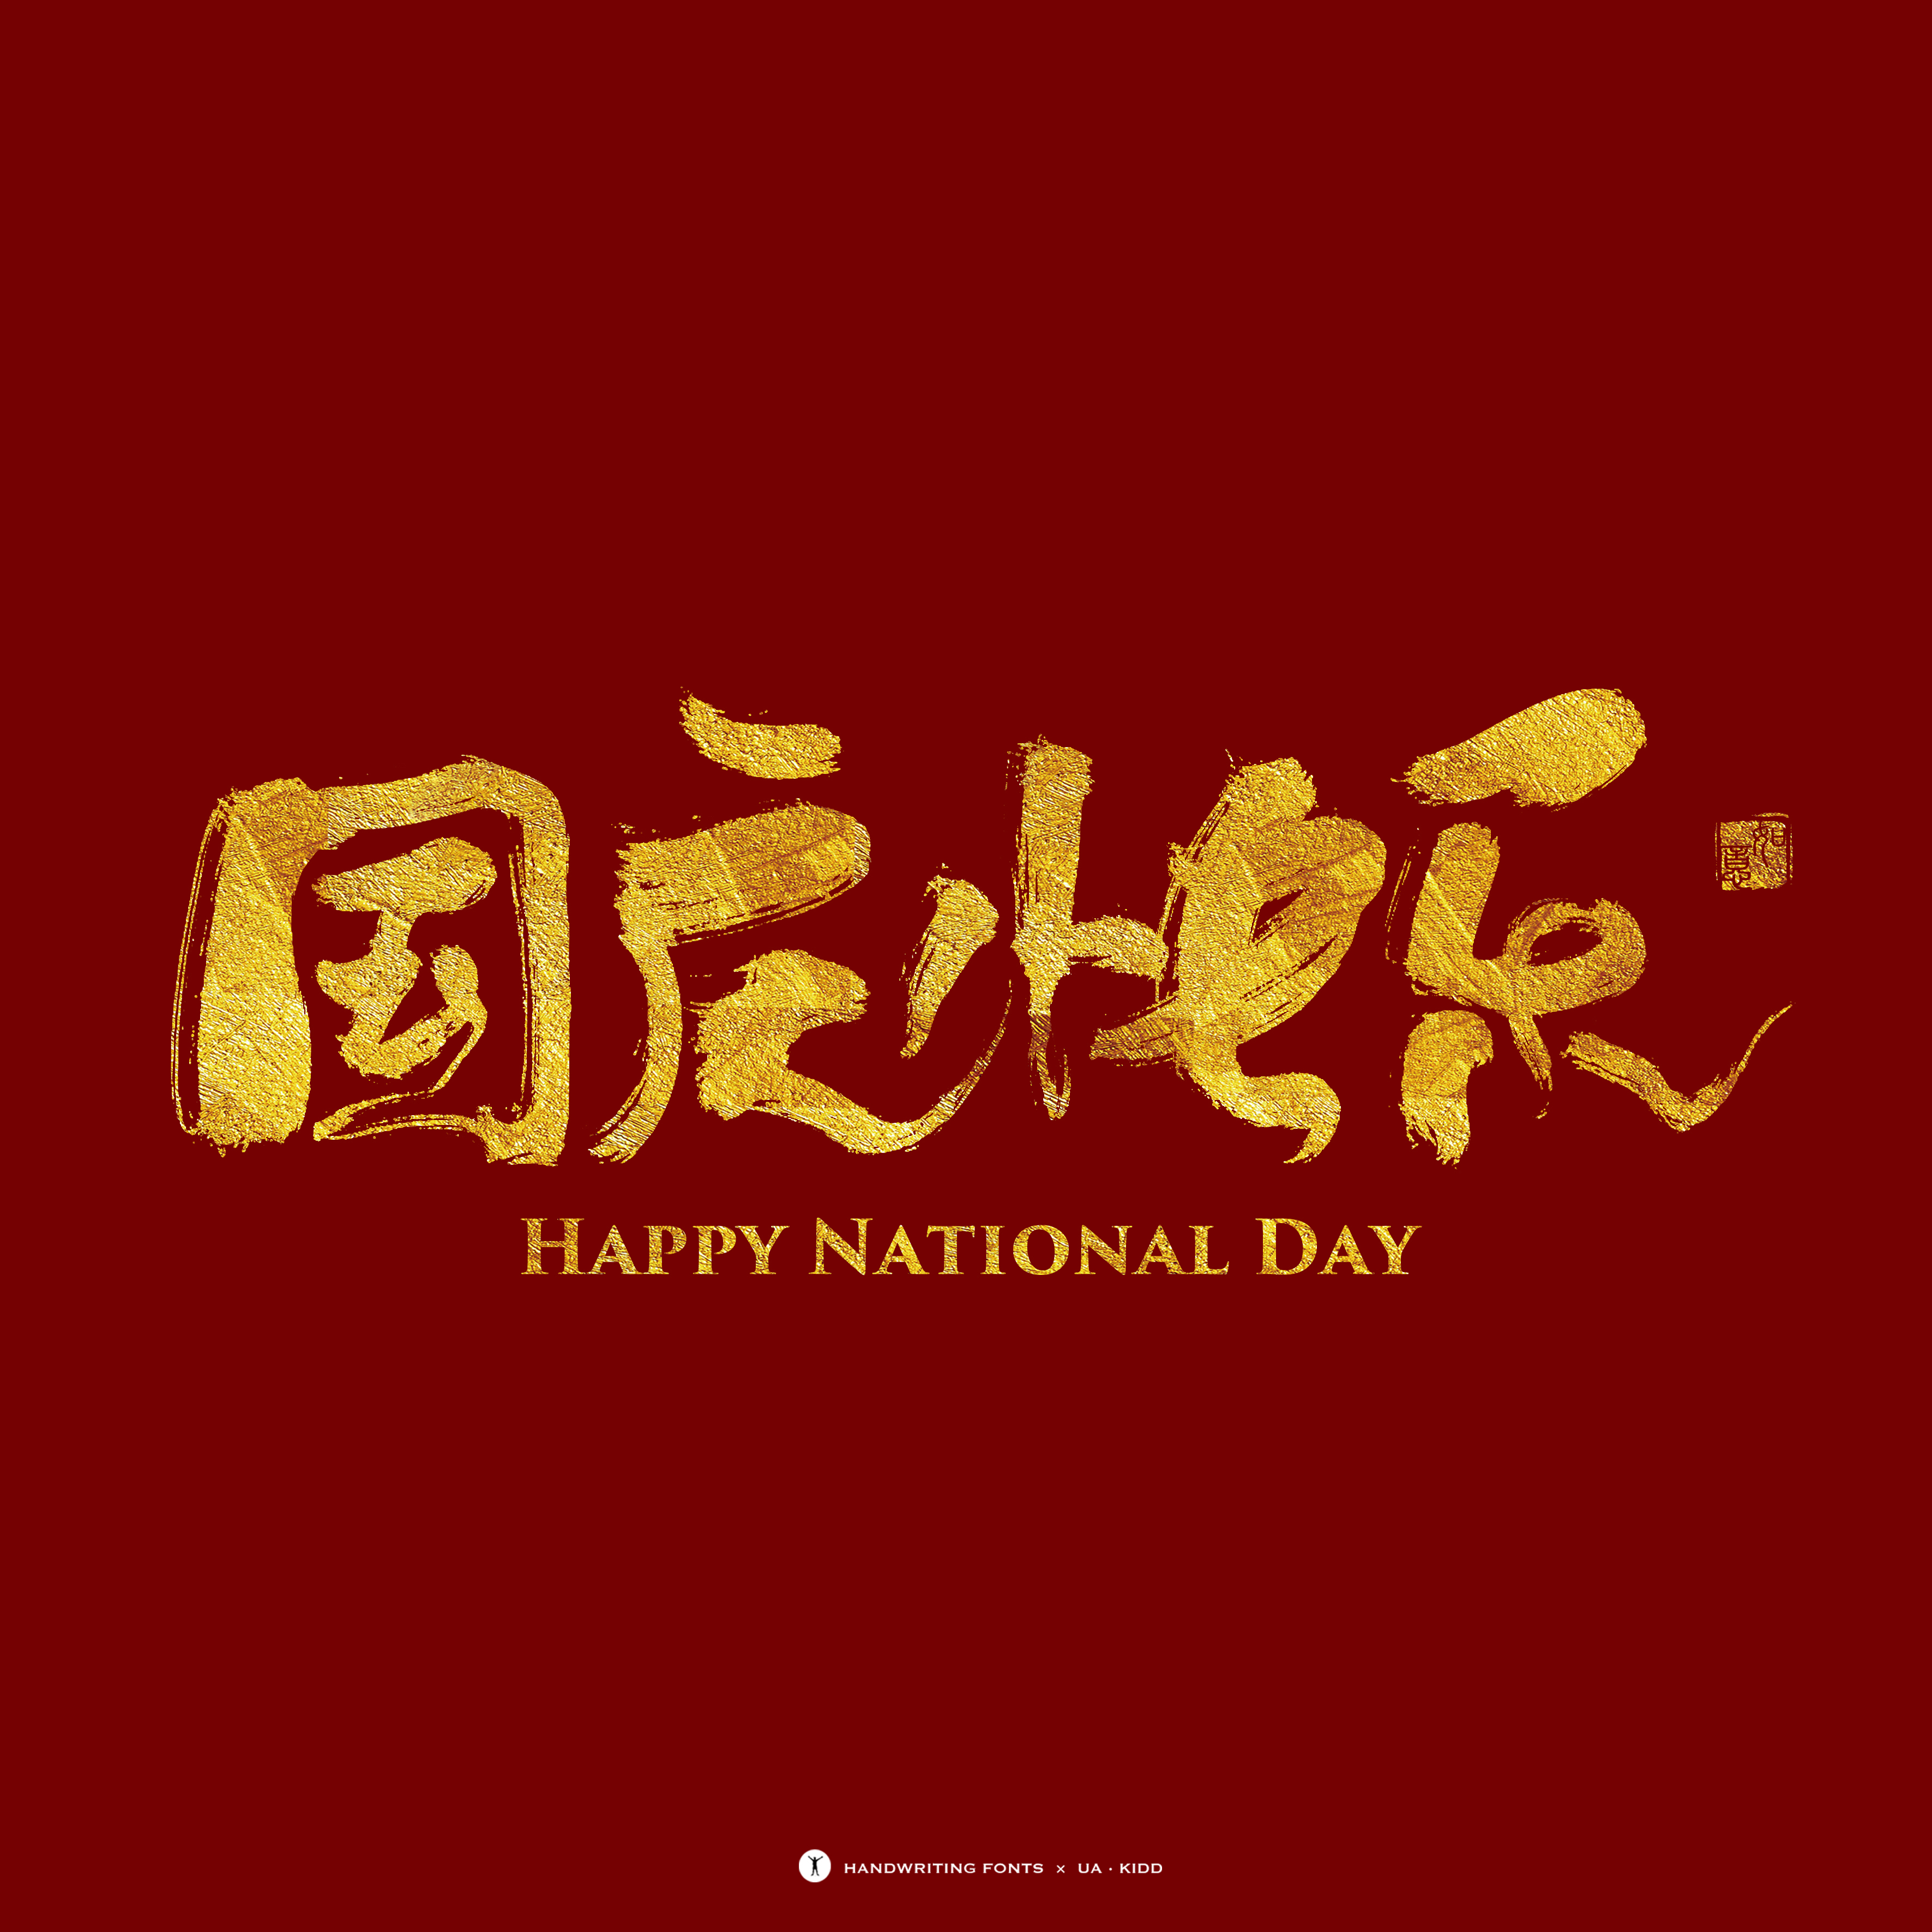 国庆节快乐大字图片